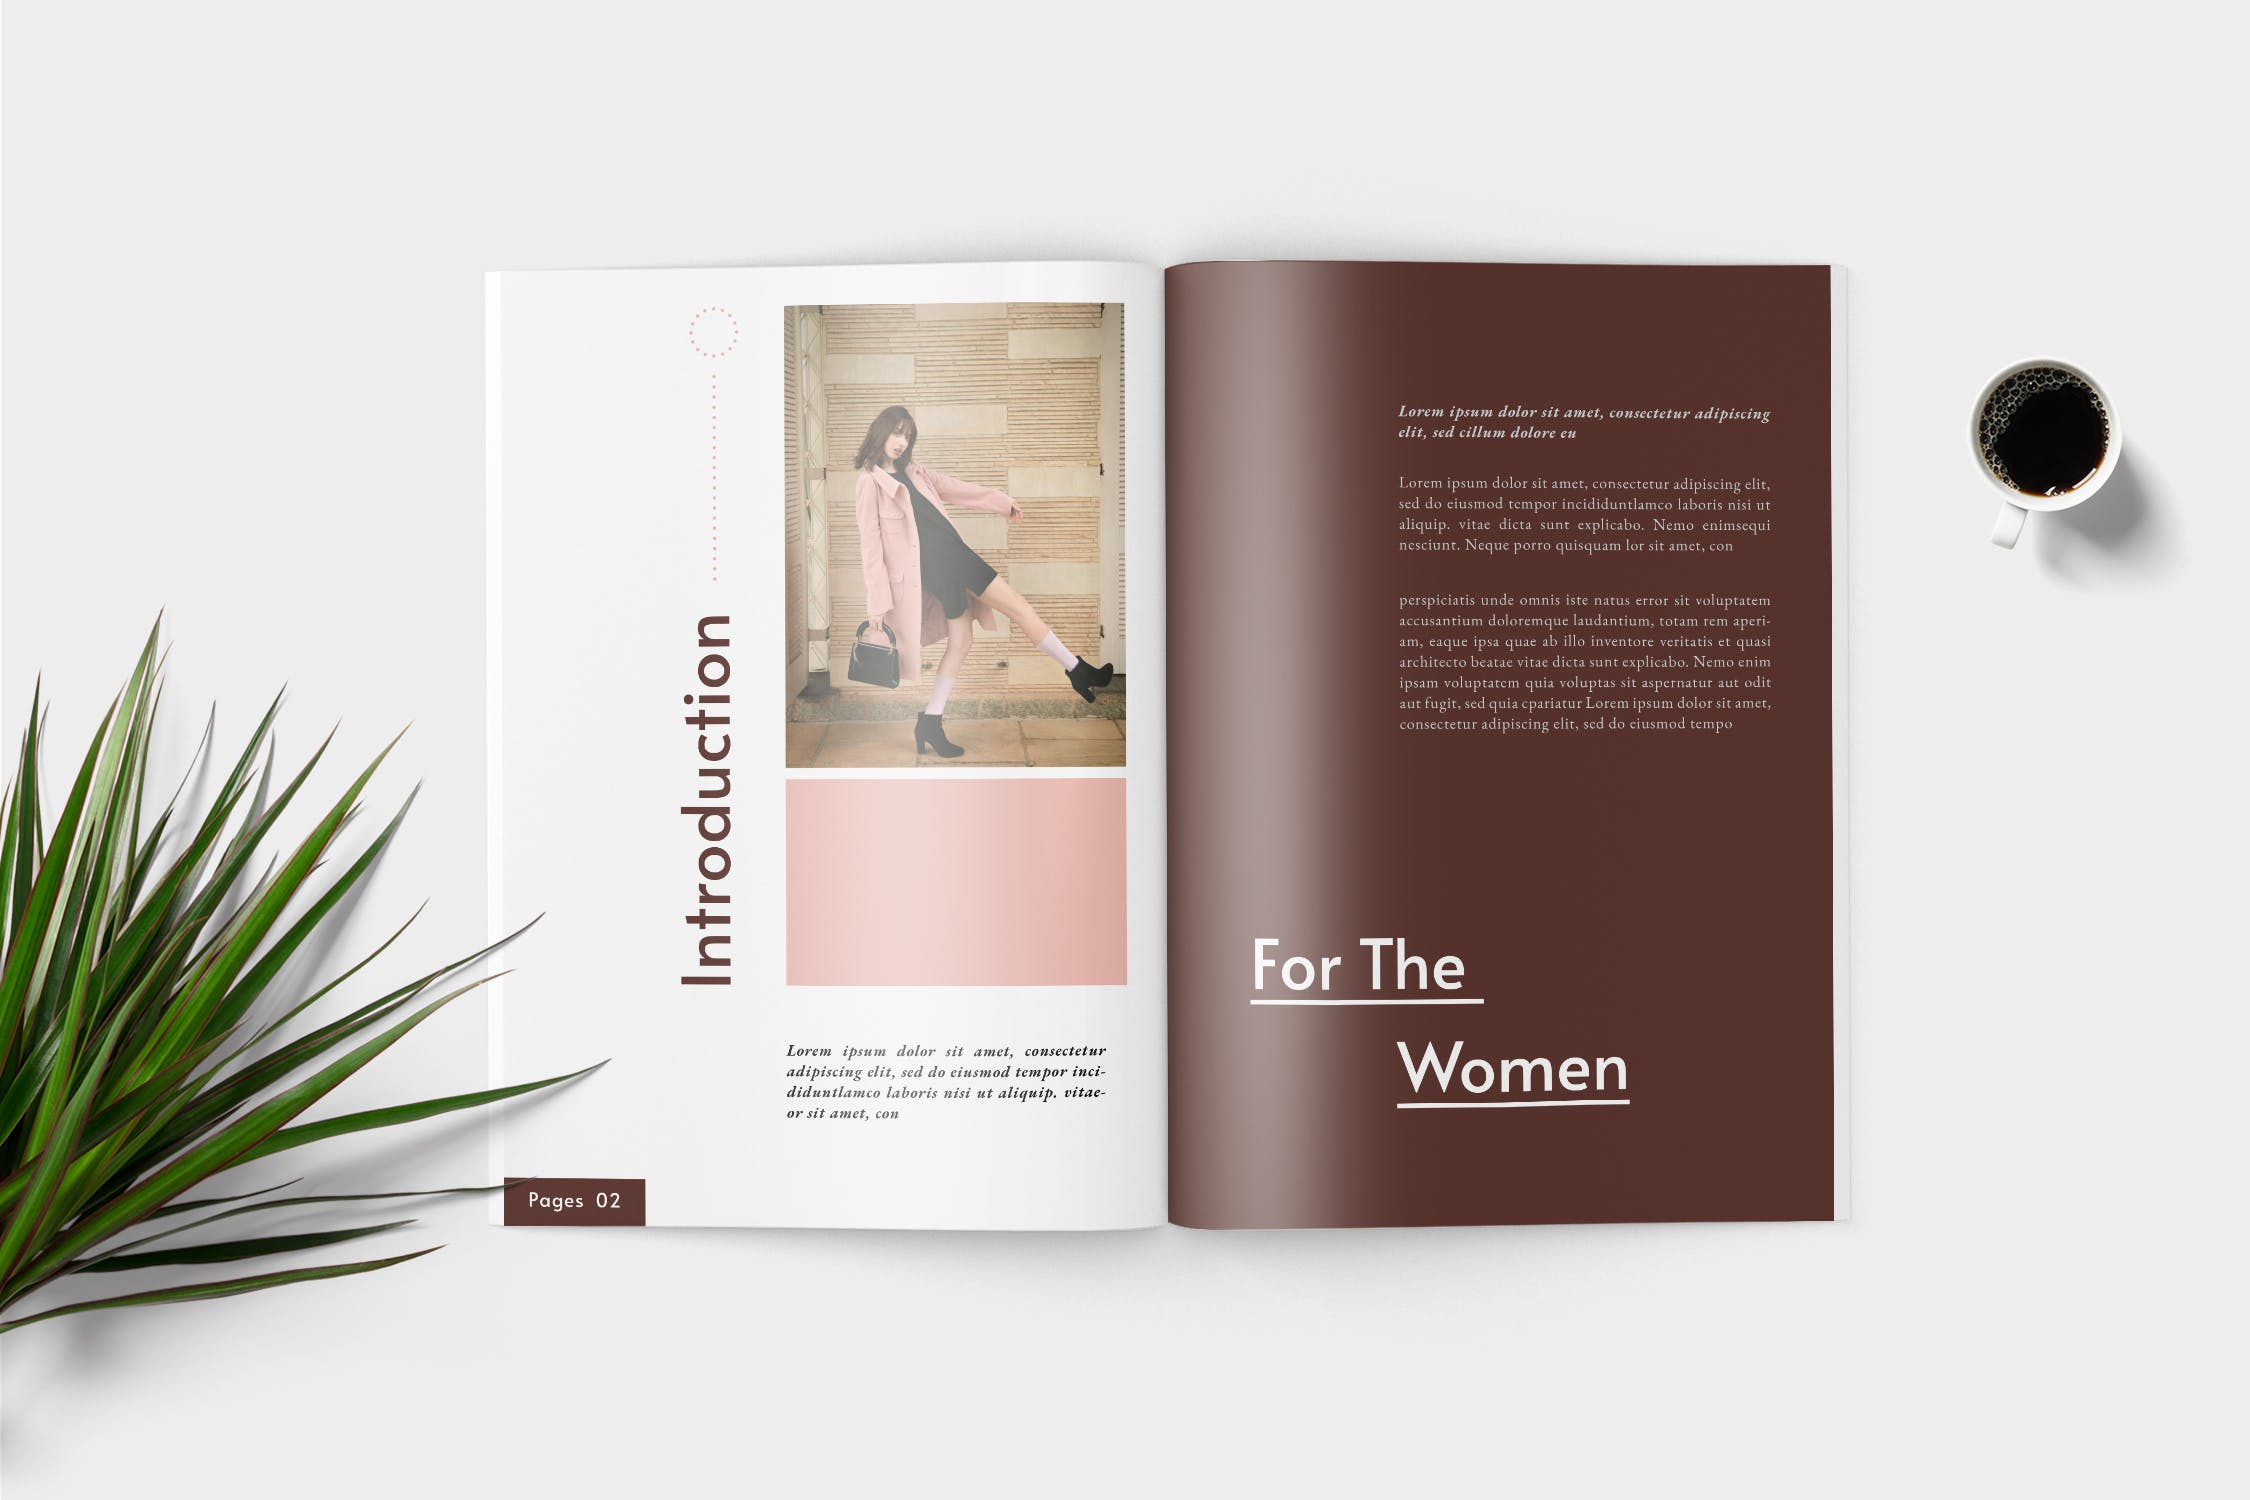 时装产品第一素材精选目录设计模板 Elana Fashion Lookbook Catalogue插图(2)